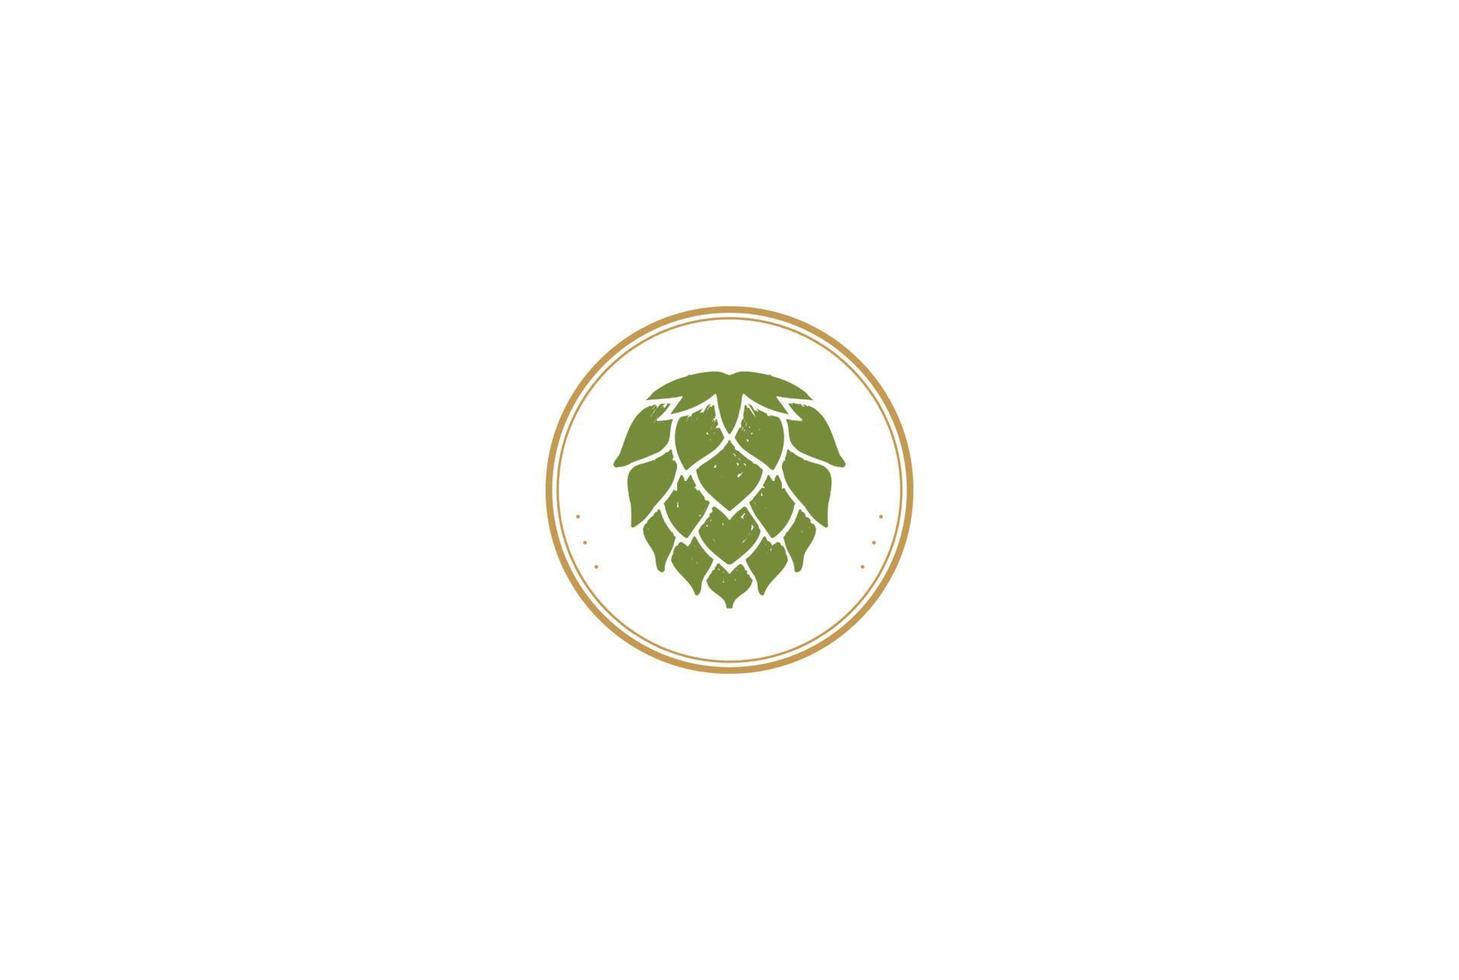 Kreis Vintage Retro Hopfen für Craft Beer Brauen Brauerei Produkt Label Logo Design Vektor